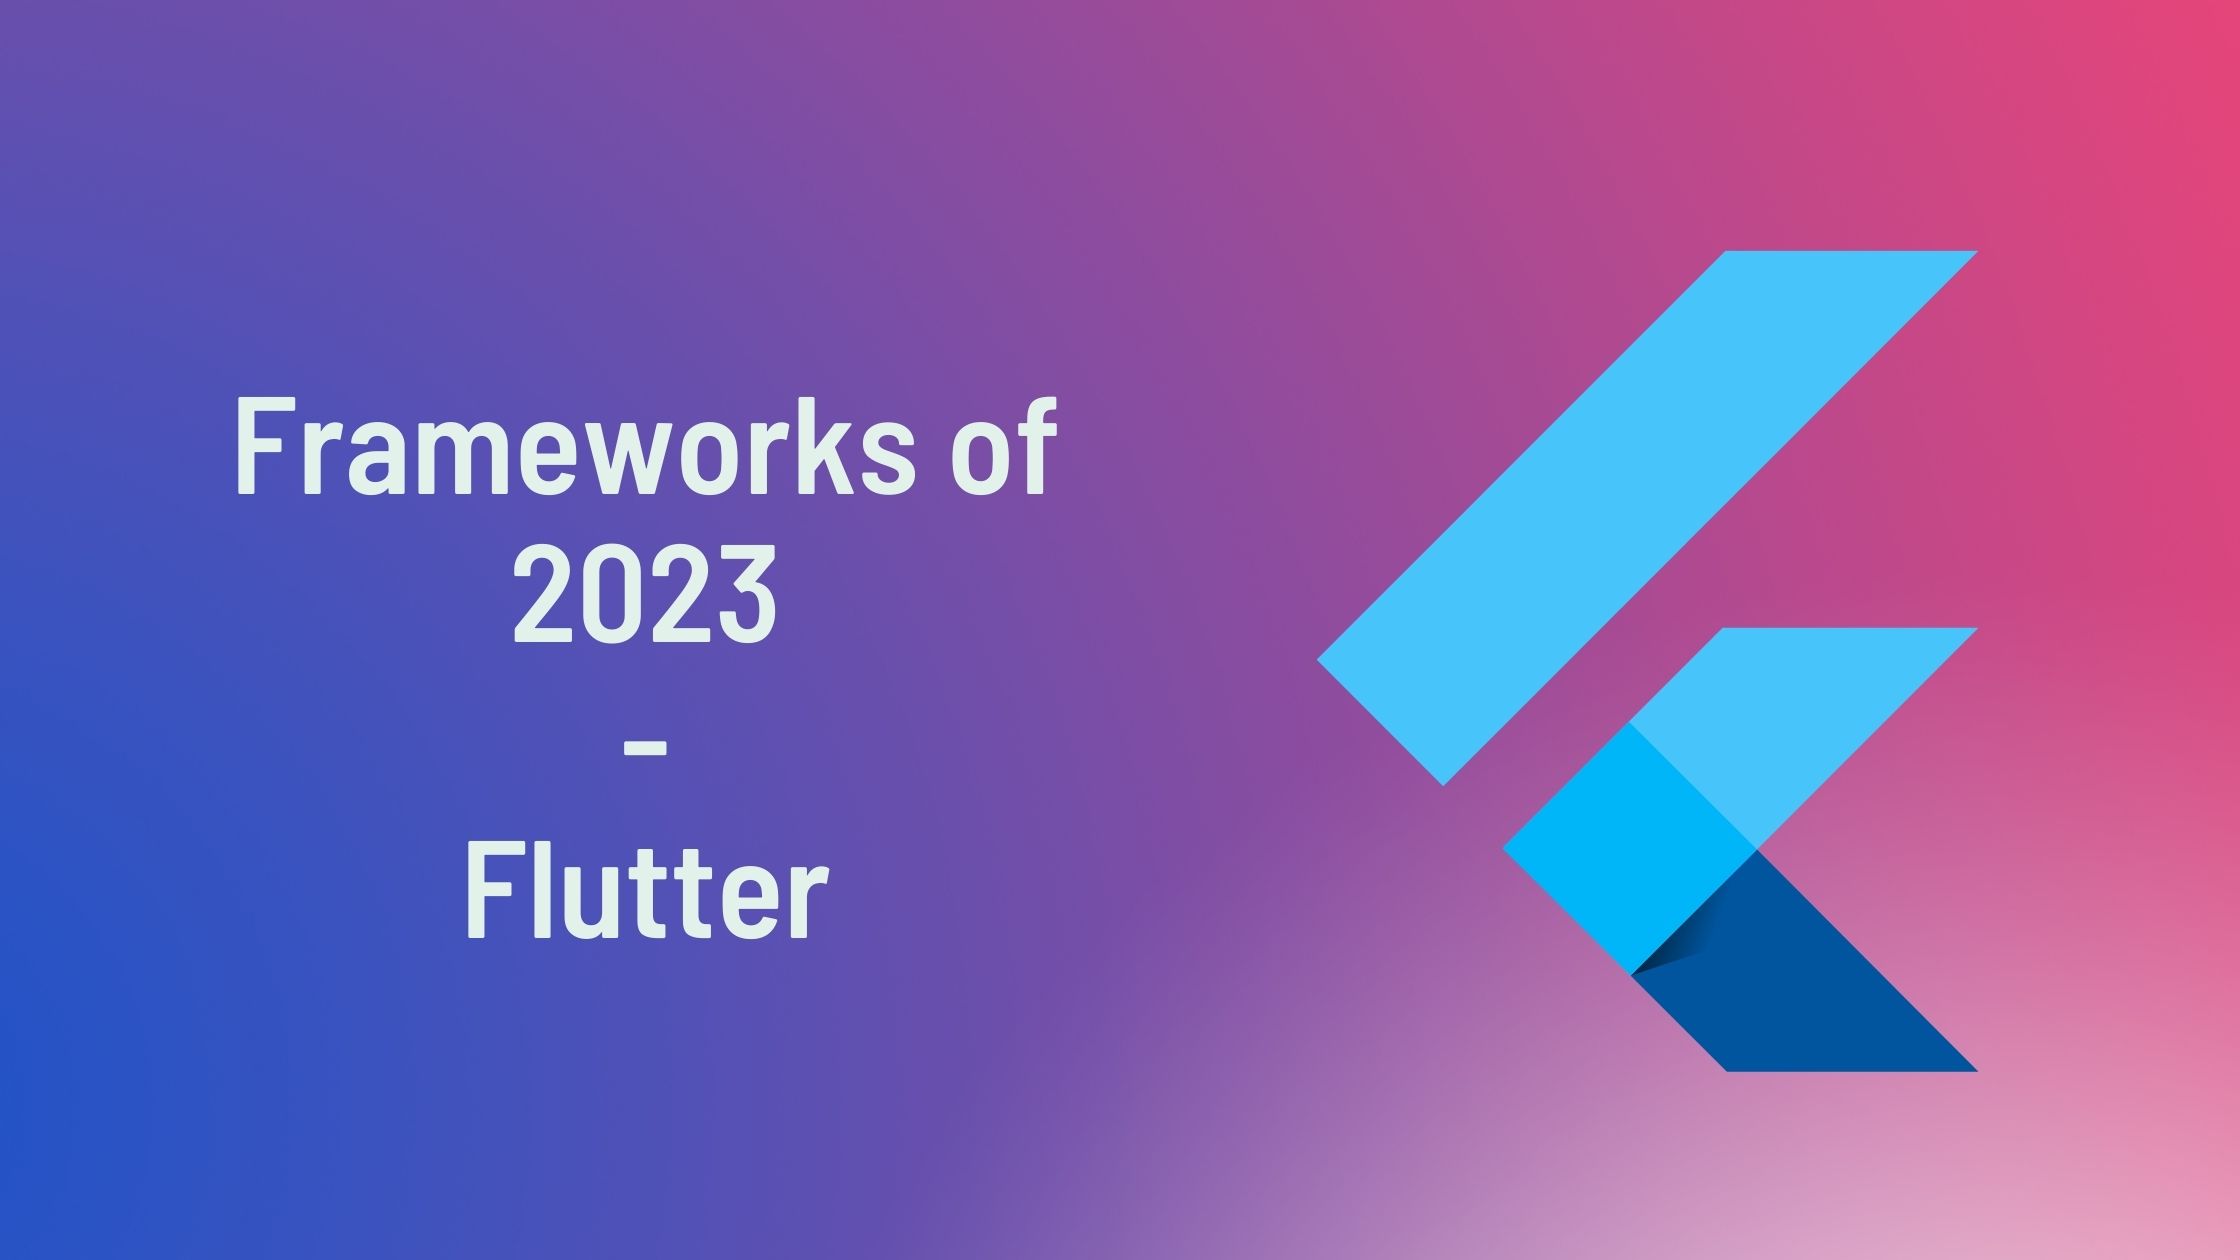 framework in 2023 - Flutter